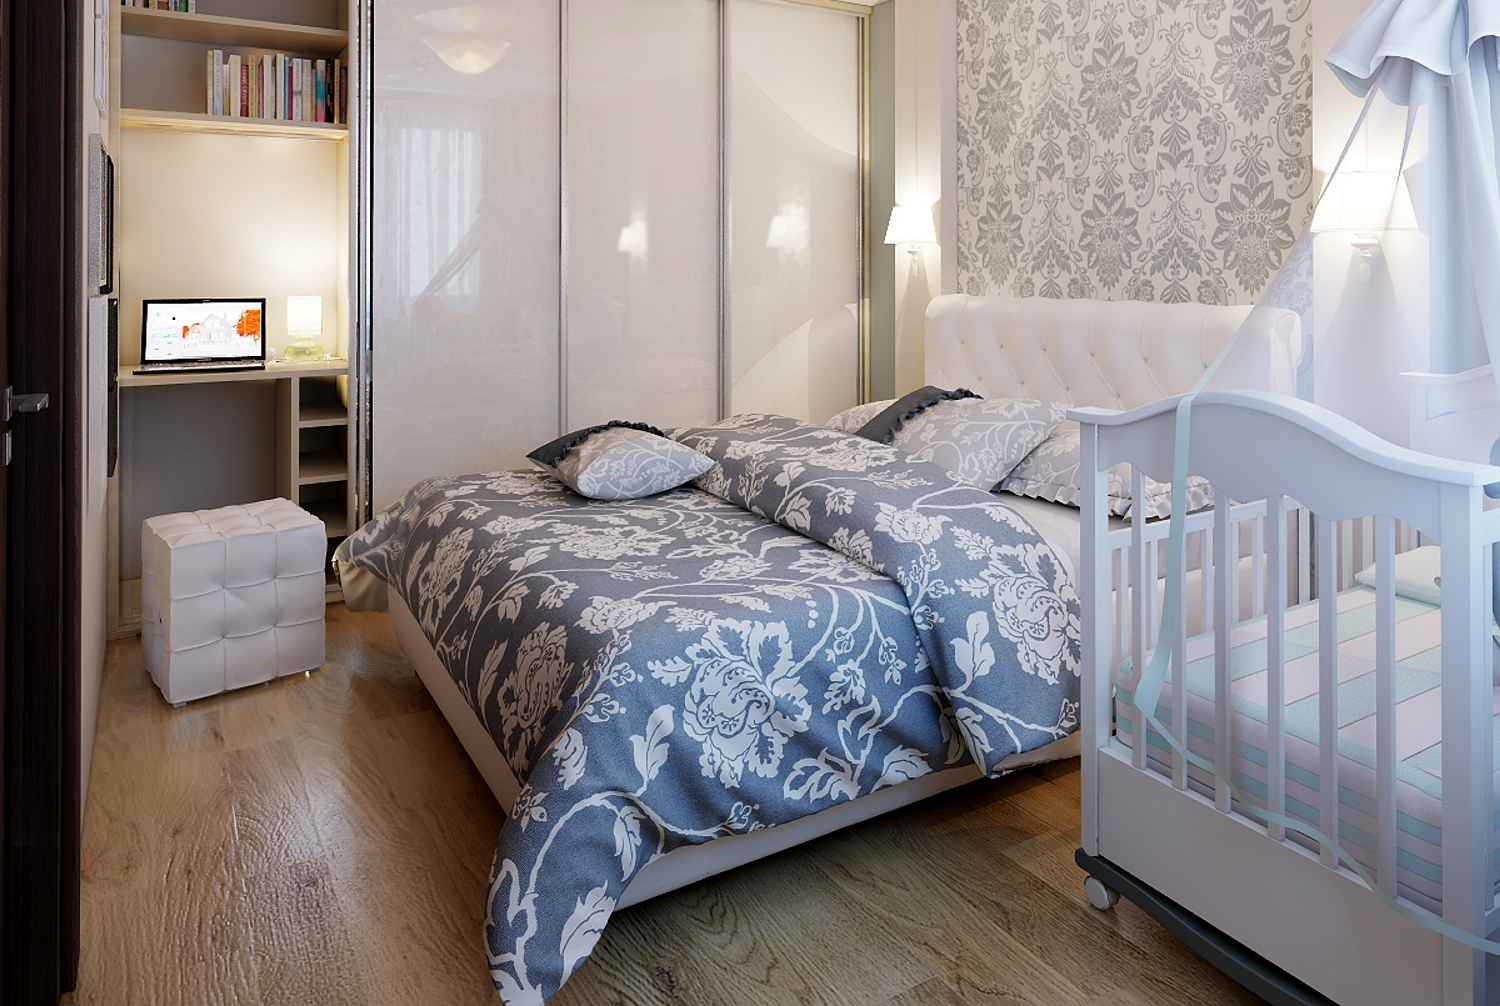 Советы по дизайну спальни с детской кроваткой: варианты оформления интерьера с фото